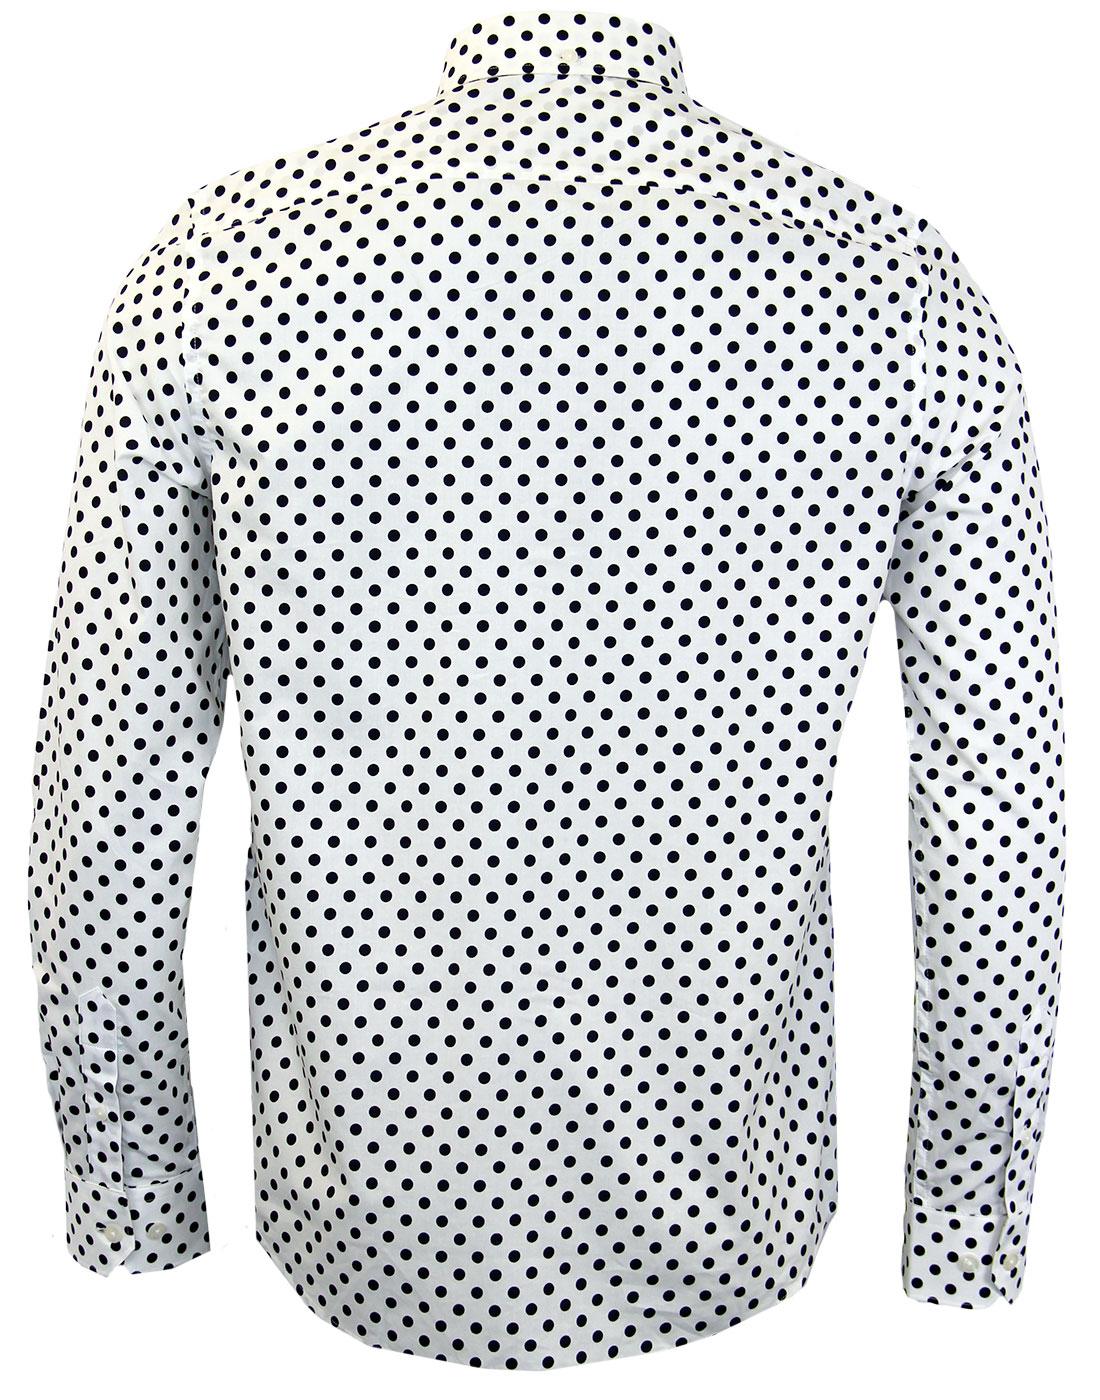 BEN SHERMAN Retro 60s Mod White Polka Dot Button Down Shirt